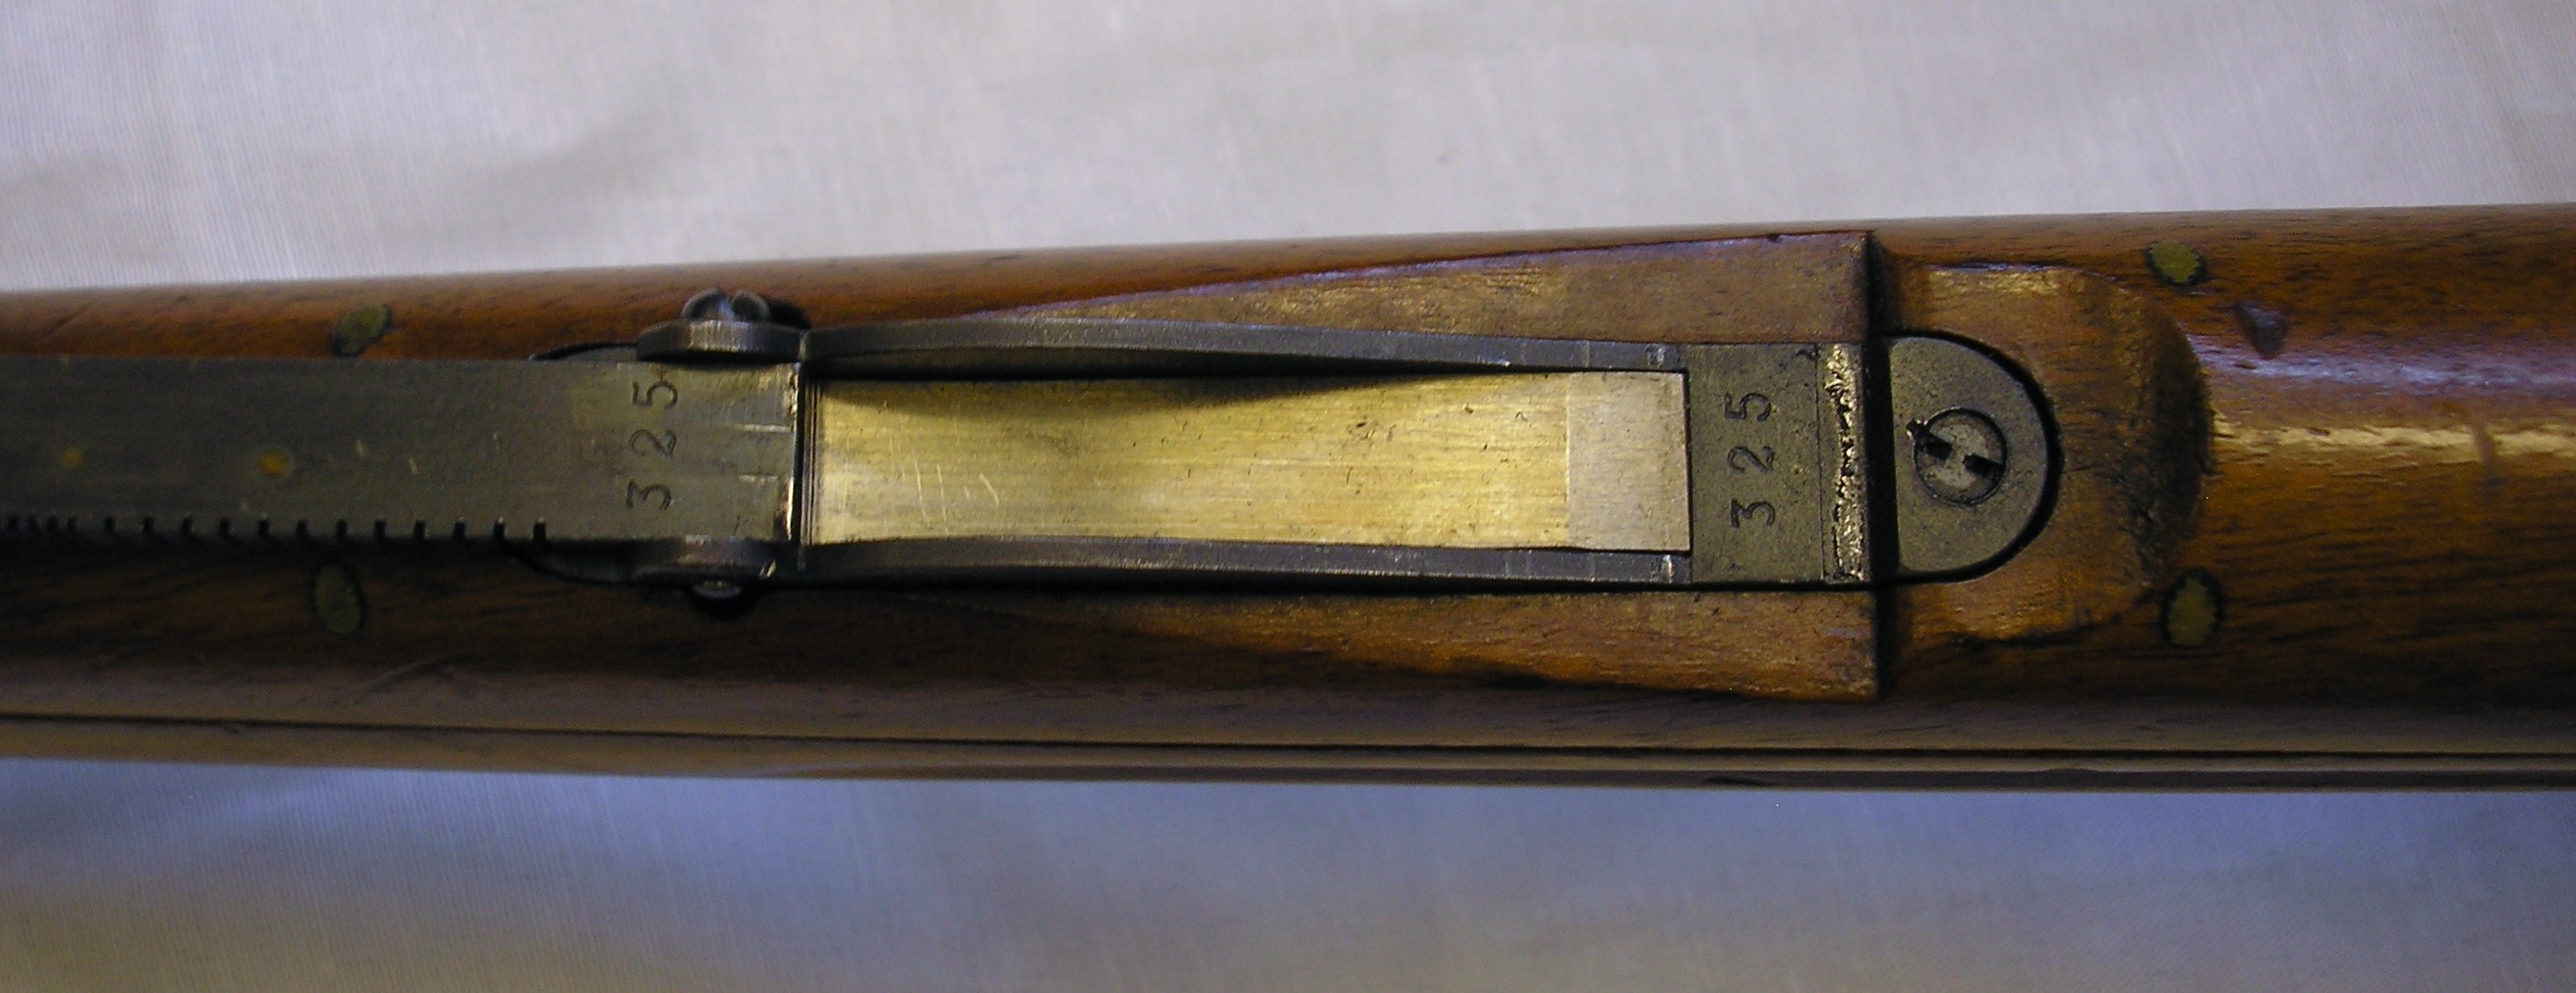 ./guns/rifle/bilder/Rifle-Kongsberg-Krag-M1894-1898-privat-325-16.JPG